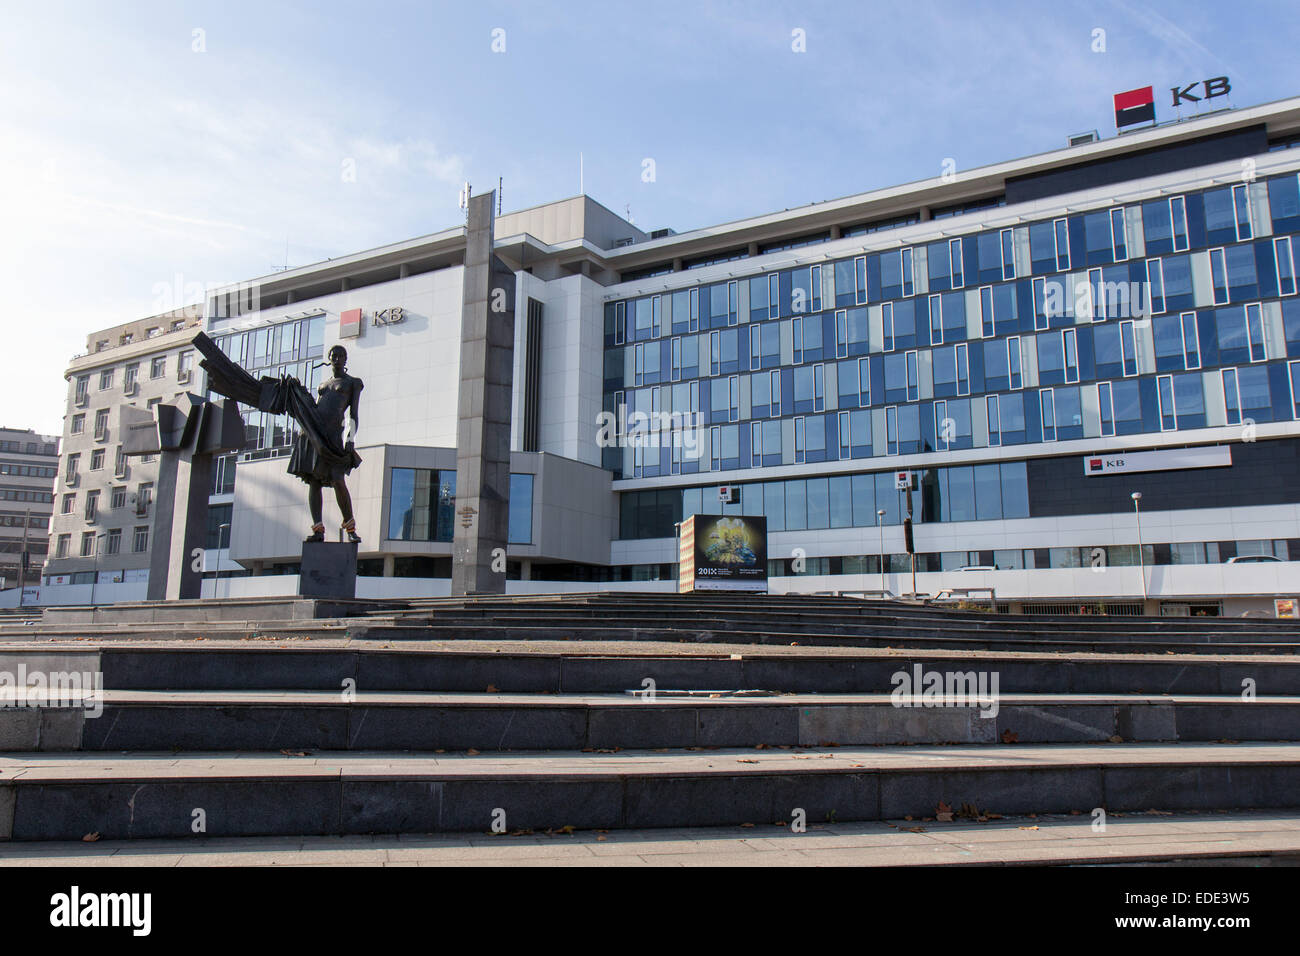 República Checa: KB Komercni banka (Banco) en el centro de Plzen. Foto de 8. Noviembre de 2014 Foto de stock